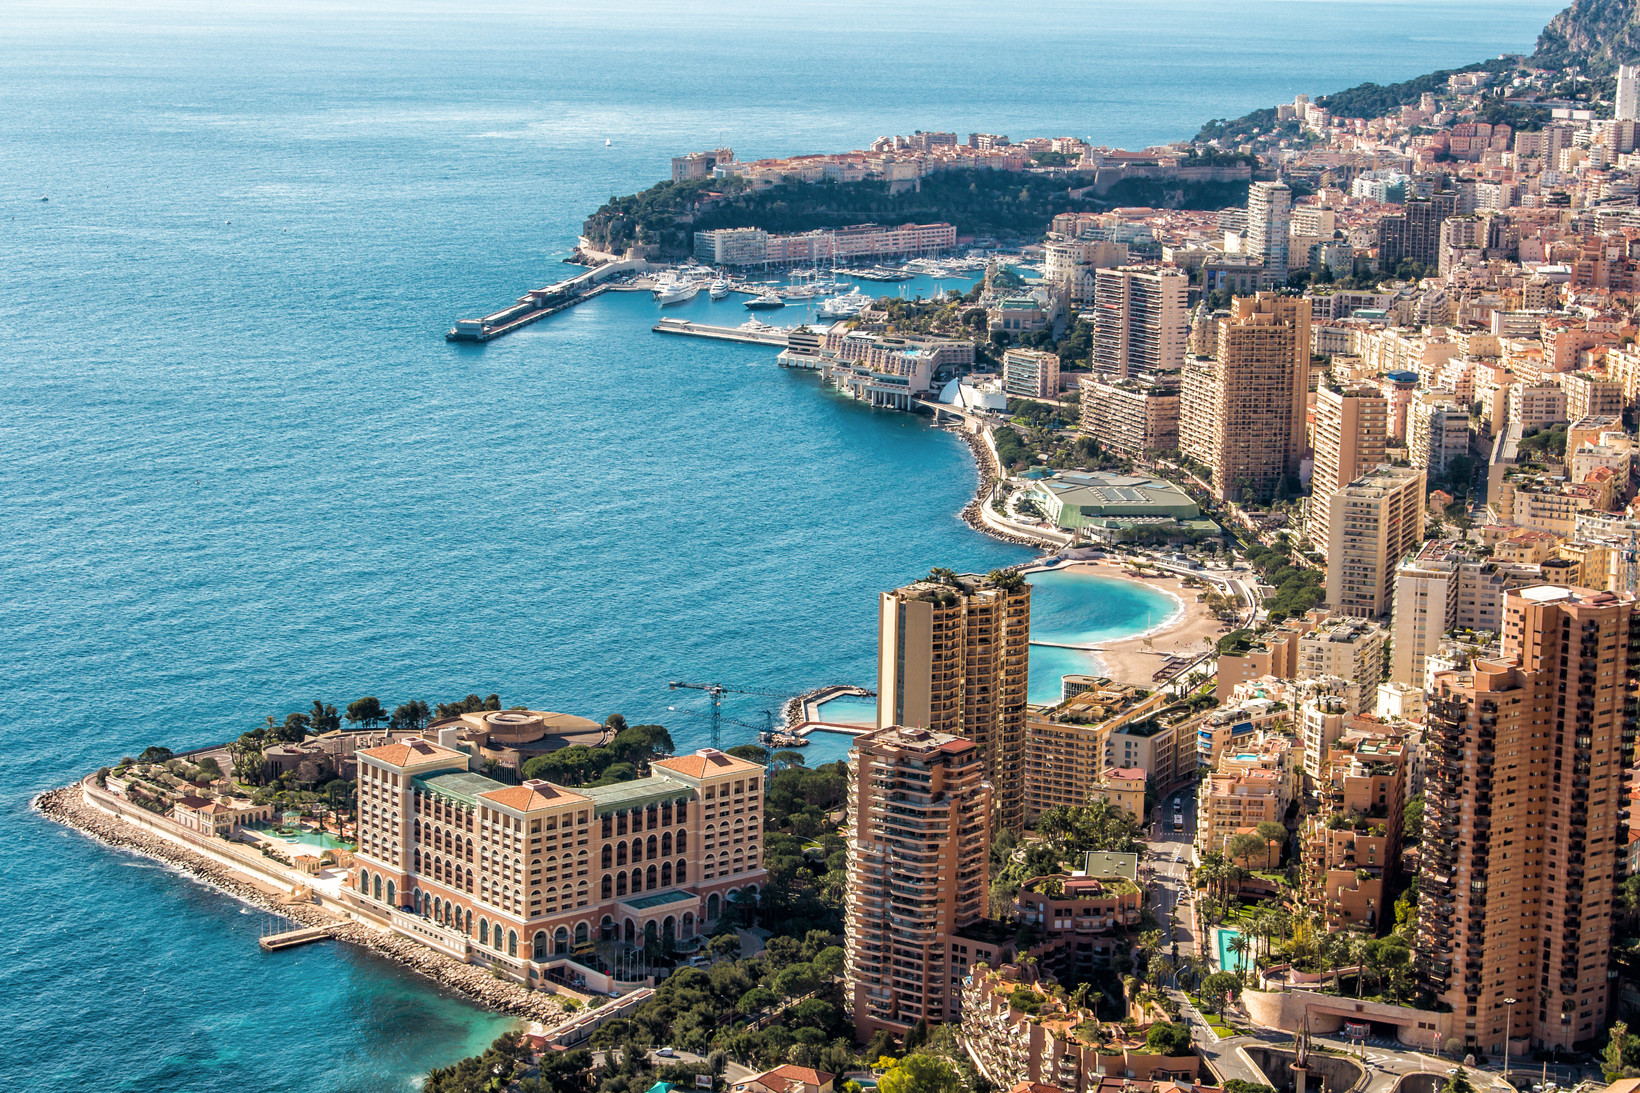 Immobilier : à Monaco, les prix restent les plus élevés au monde